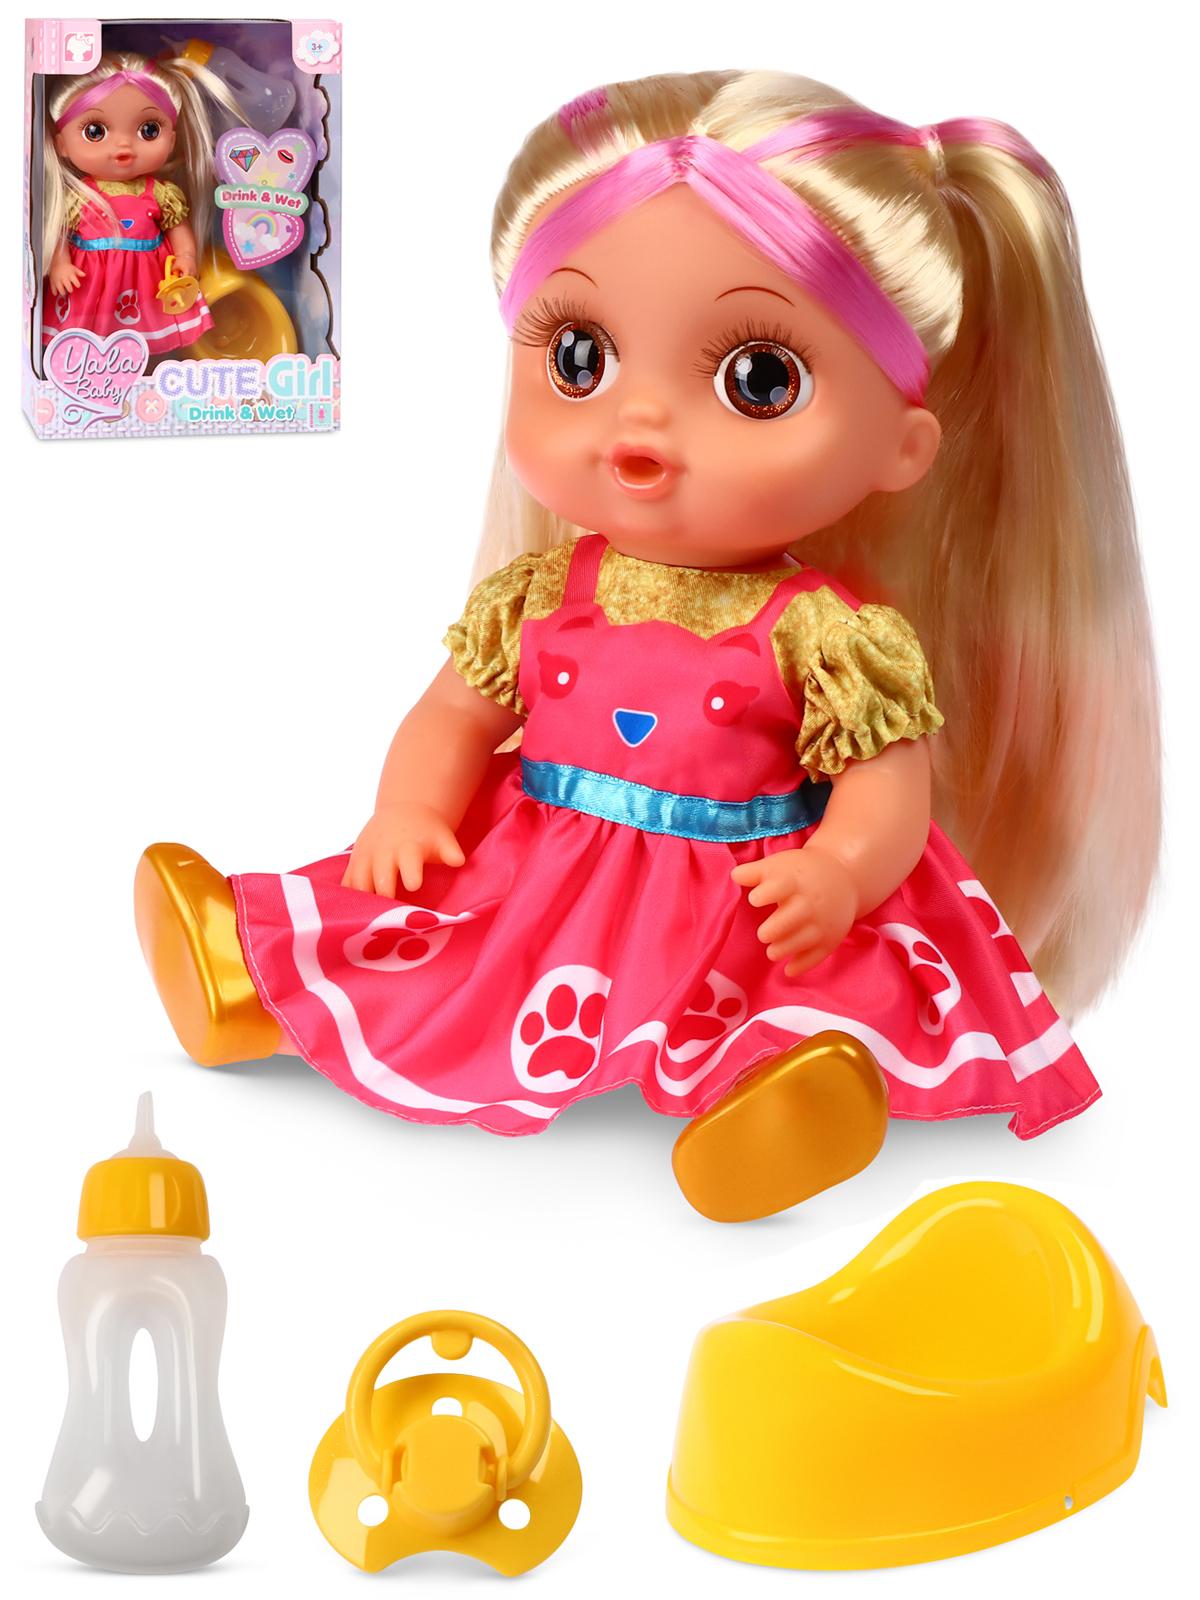 Кукла AMORE BELLO С розовыми волосами бутылочка желтый горшок соска JB0211646 - фото 7